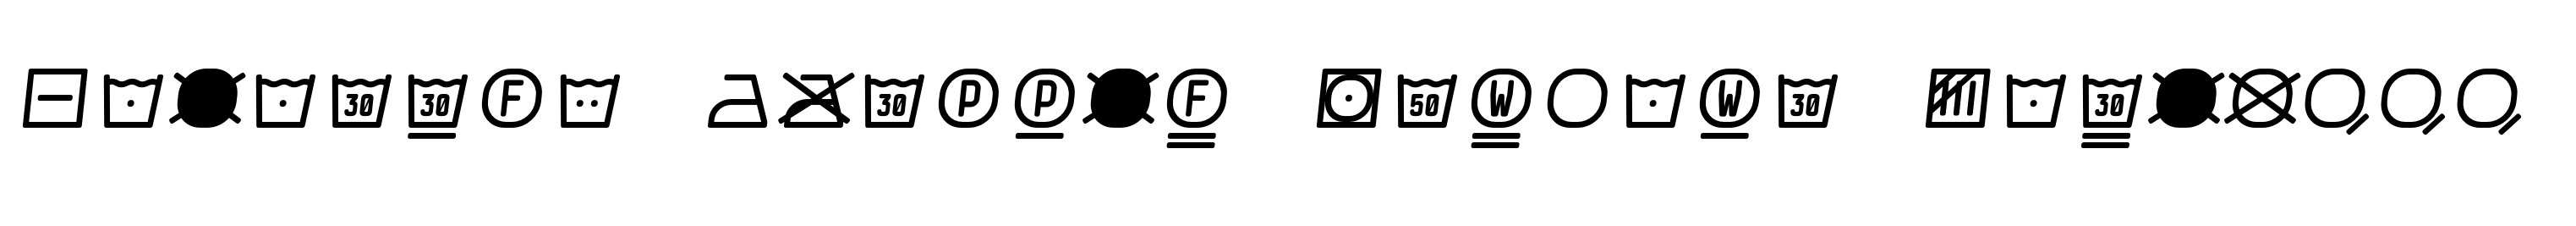 Monostep Washing Symbols Rounded Light Italic